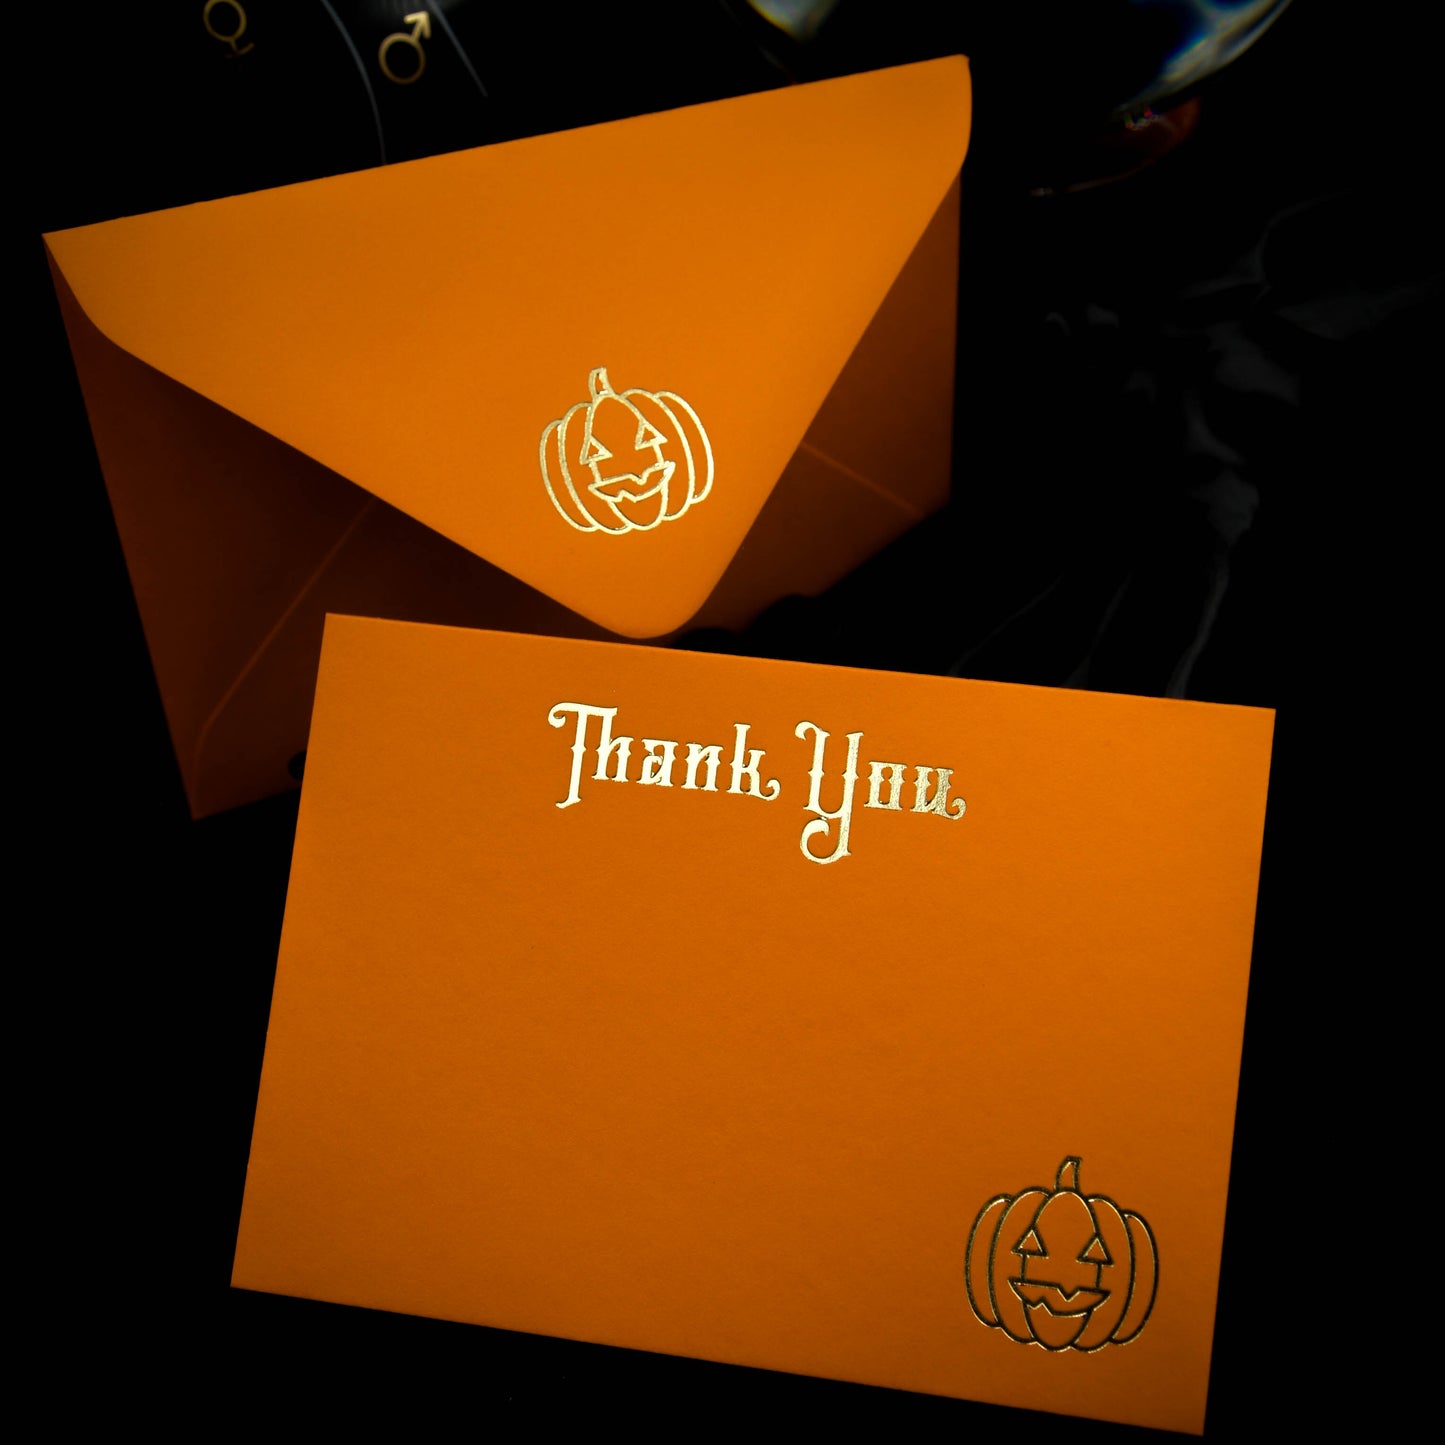 Tarjetas de agradecimiento y sobres de calabaza naranja